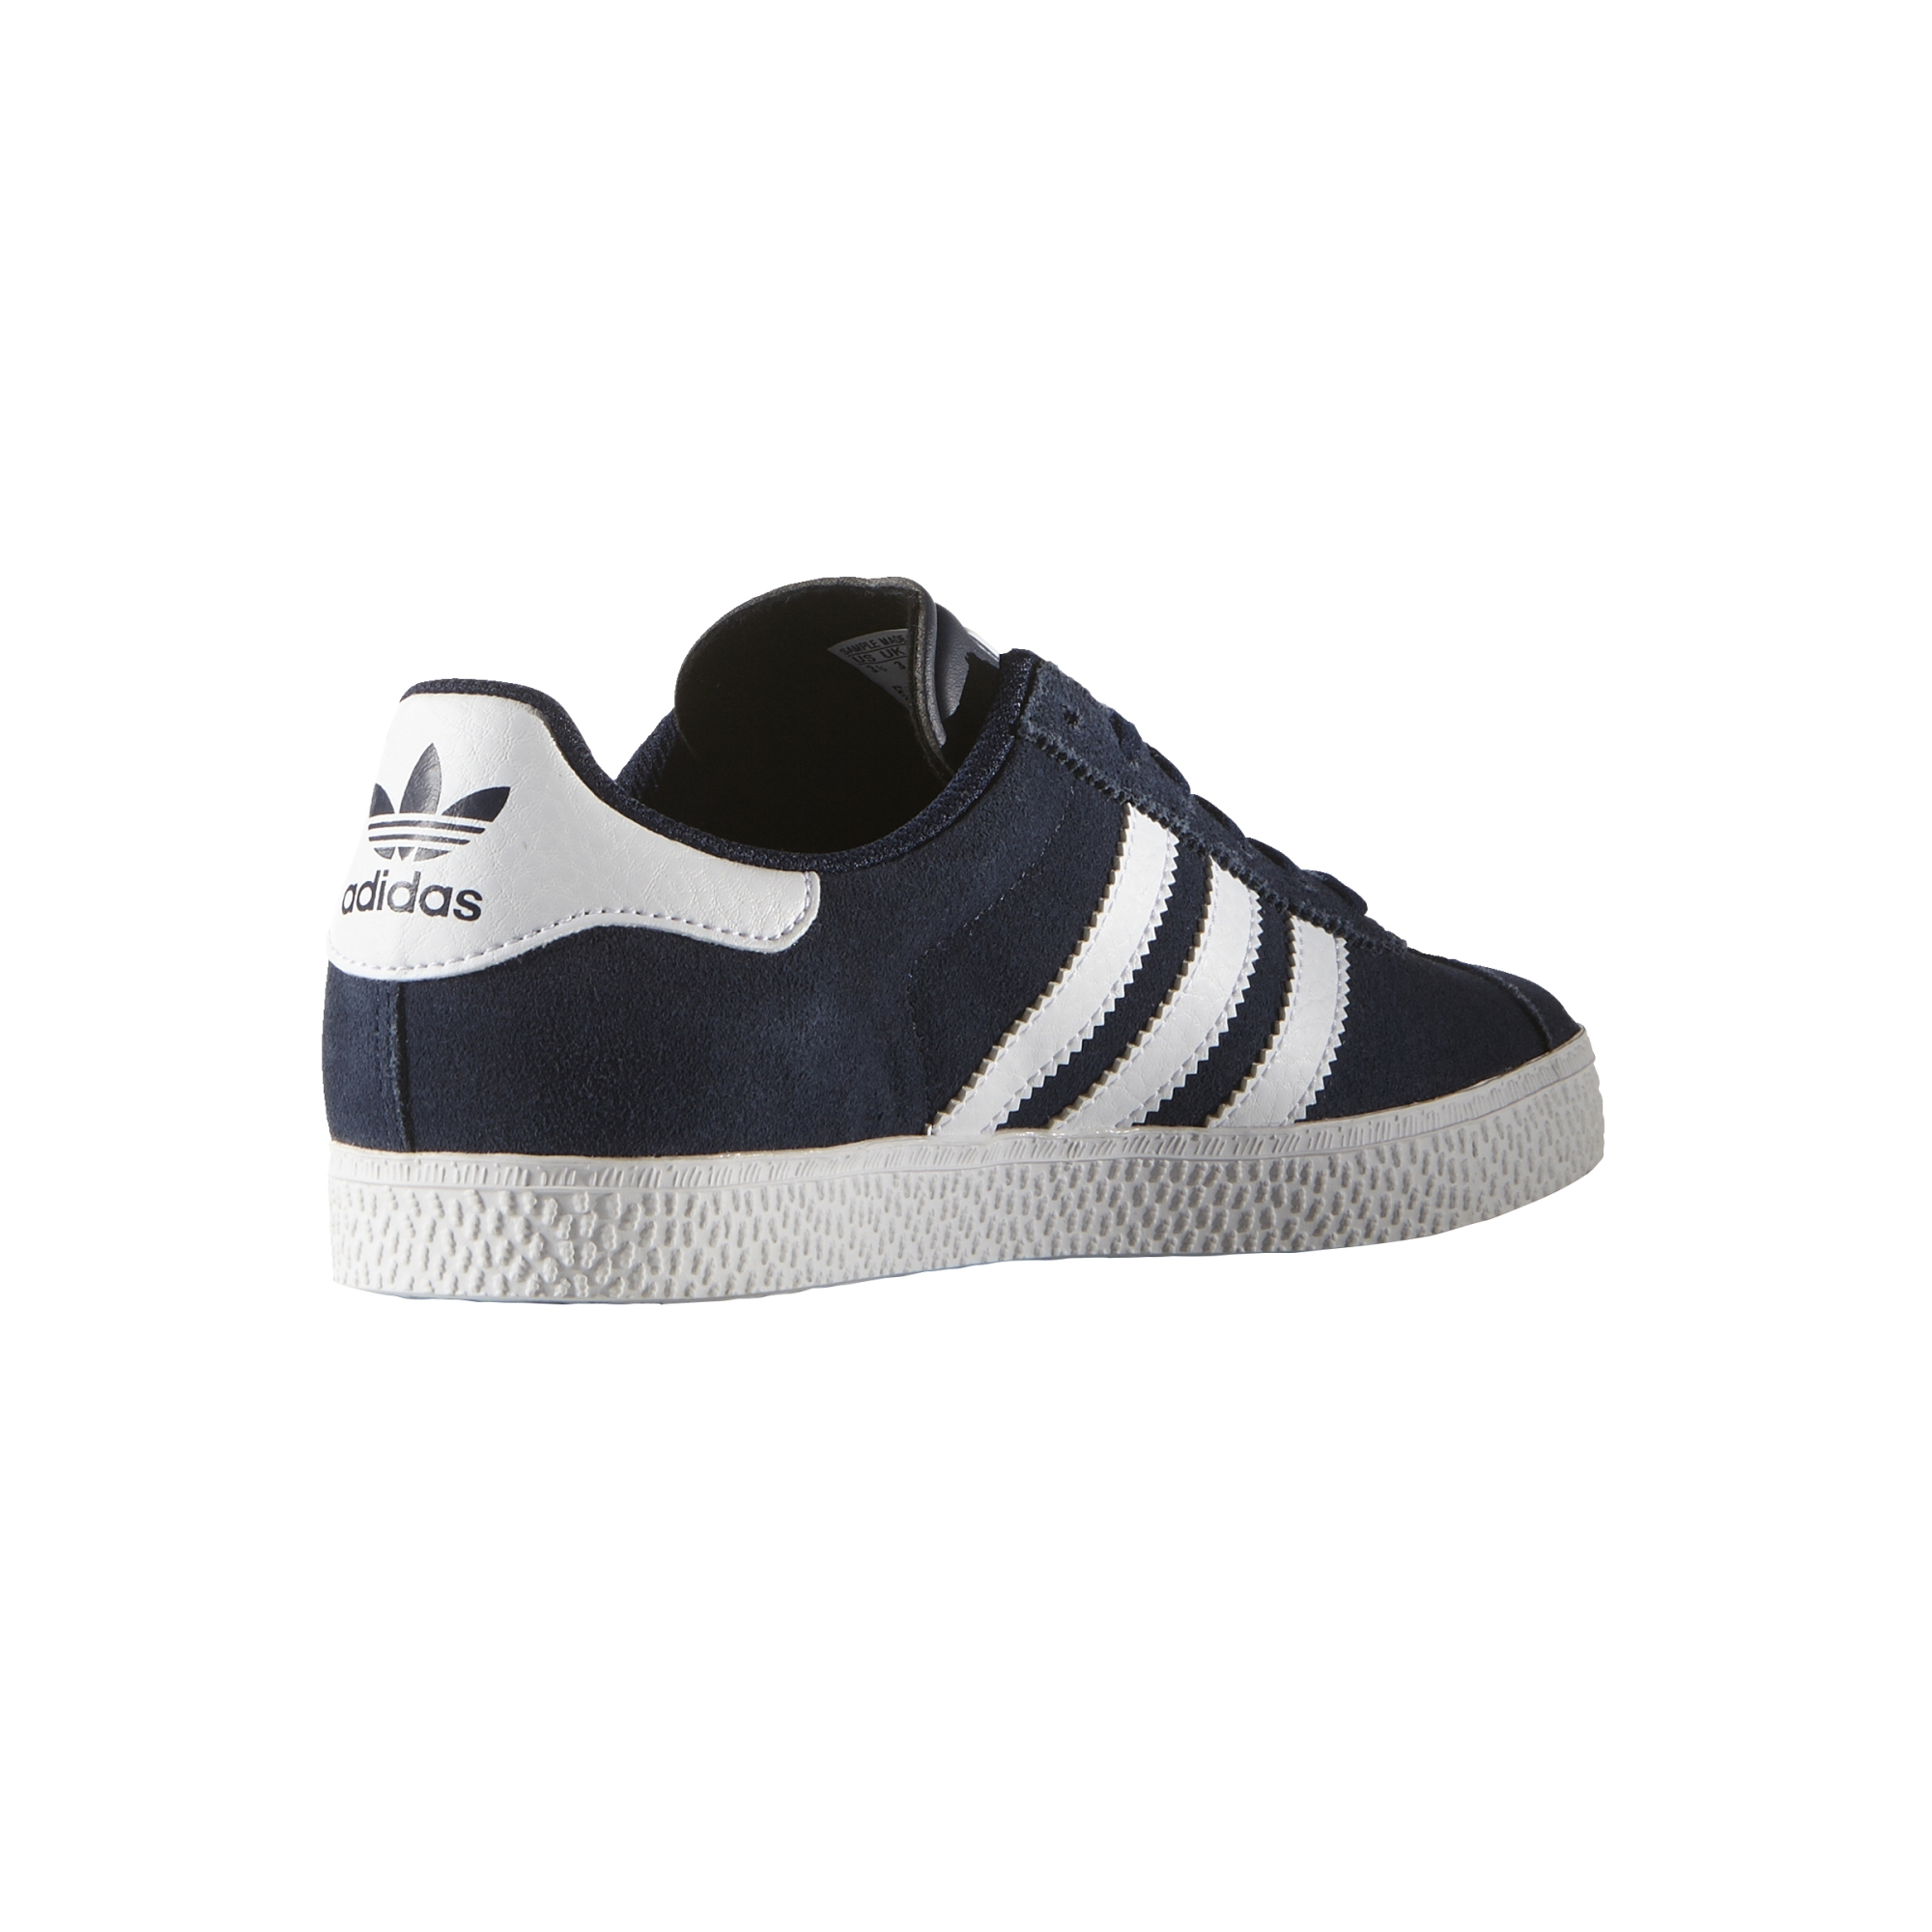 Adidas Originals Gazelle 2 navy/white)